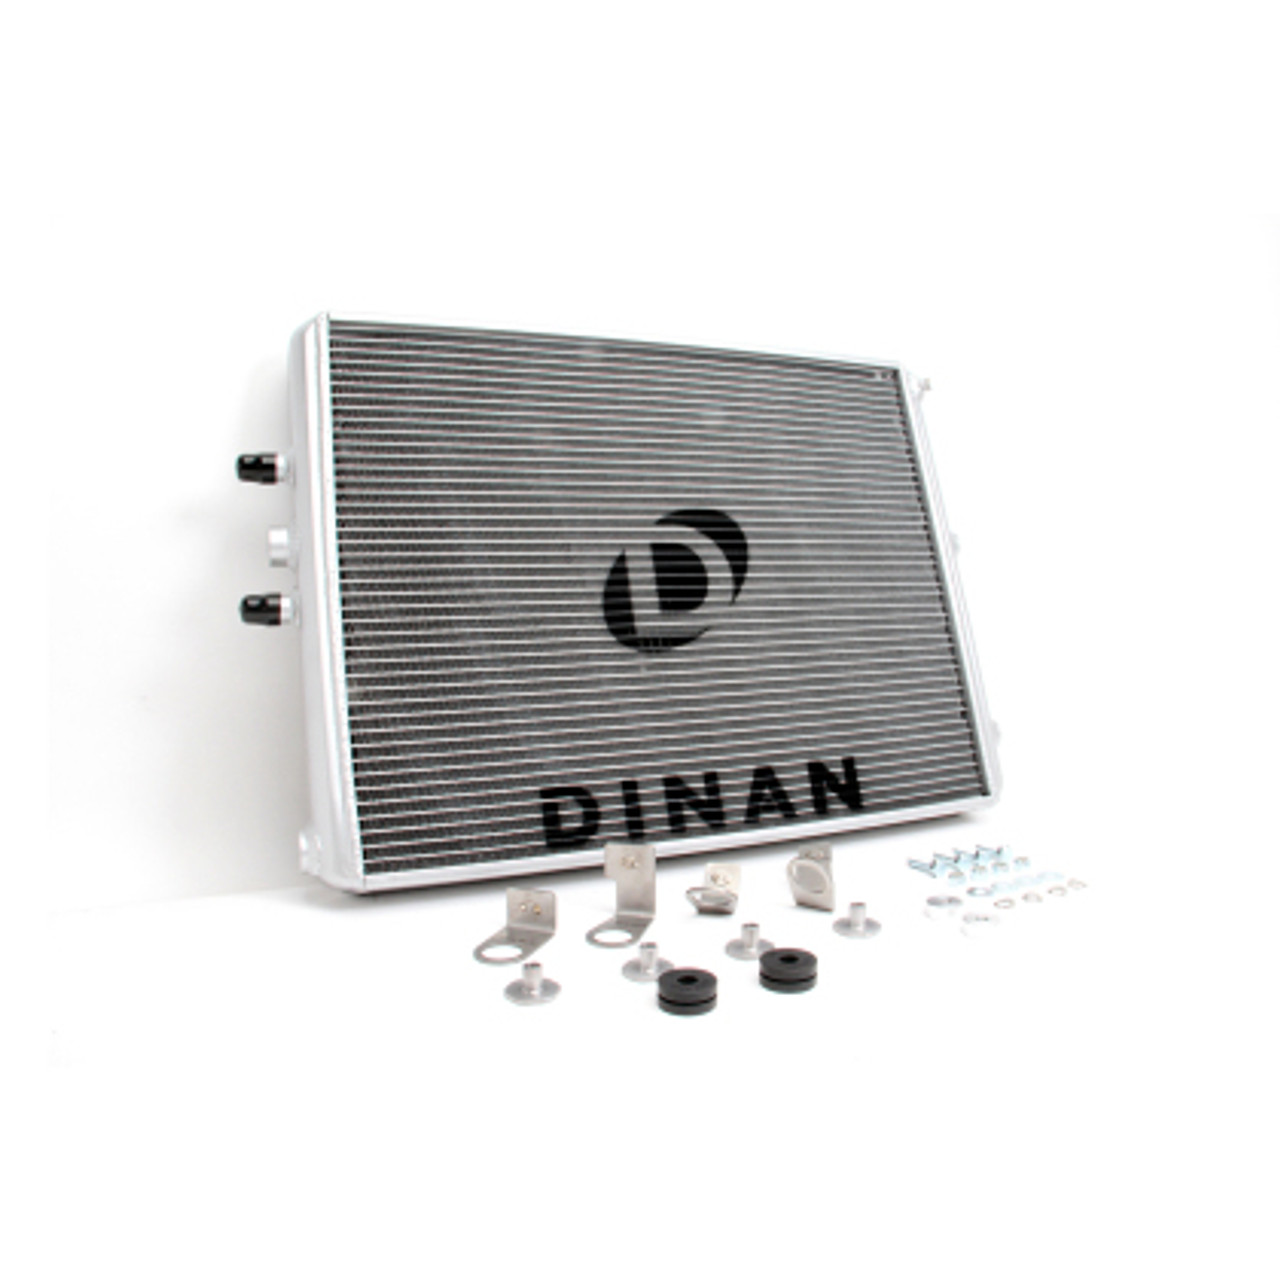 BMW High Performance Heat Exchanger - Dinan D780-0001A